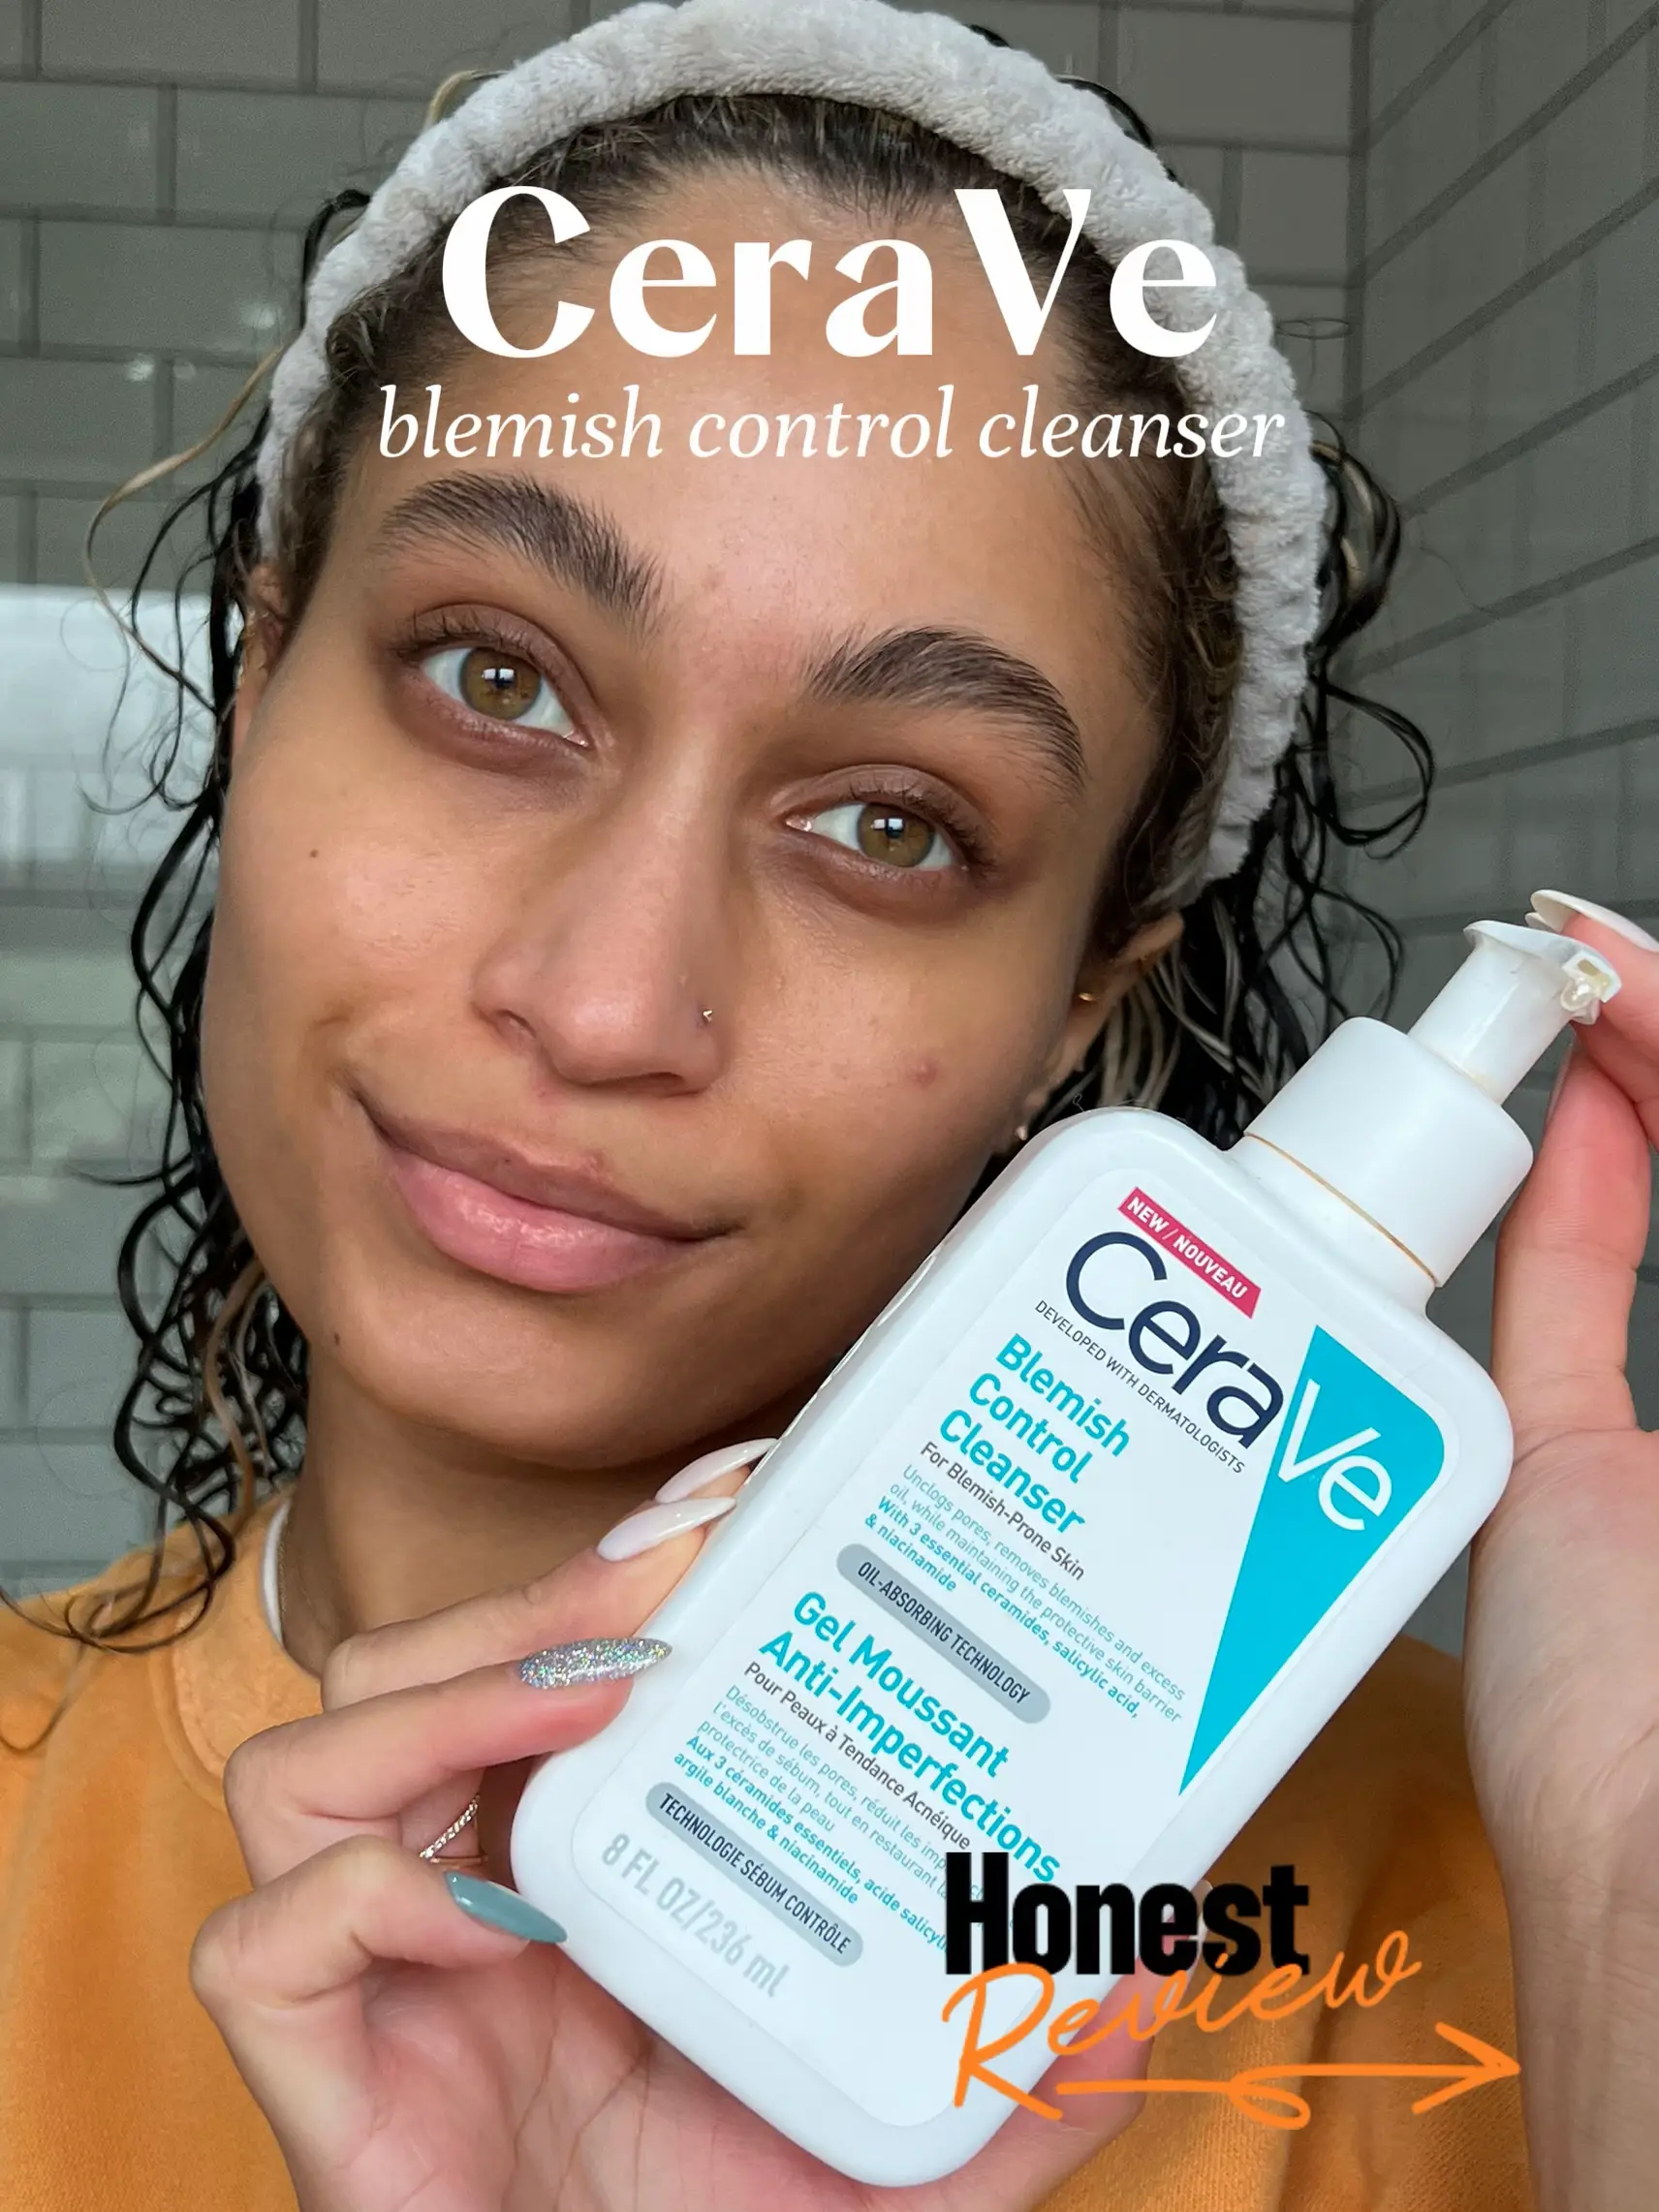 Cerave Acne Control Gel 40ml - Dr. Skin Online